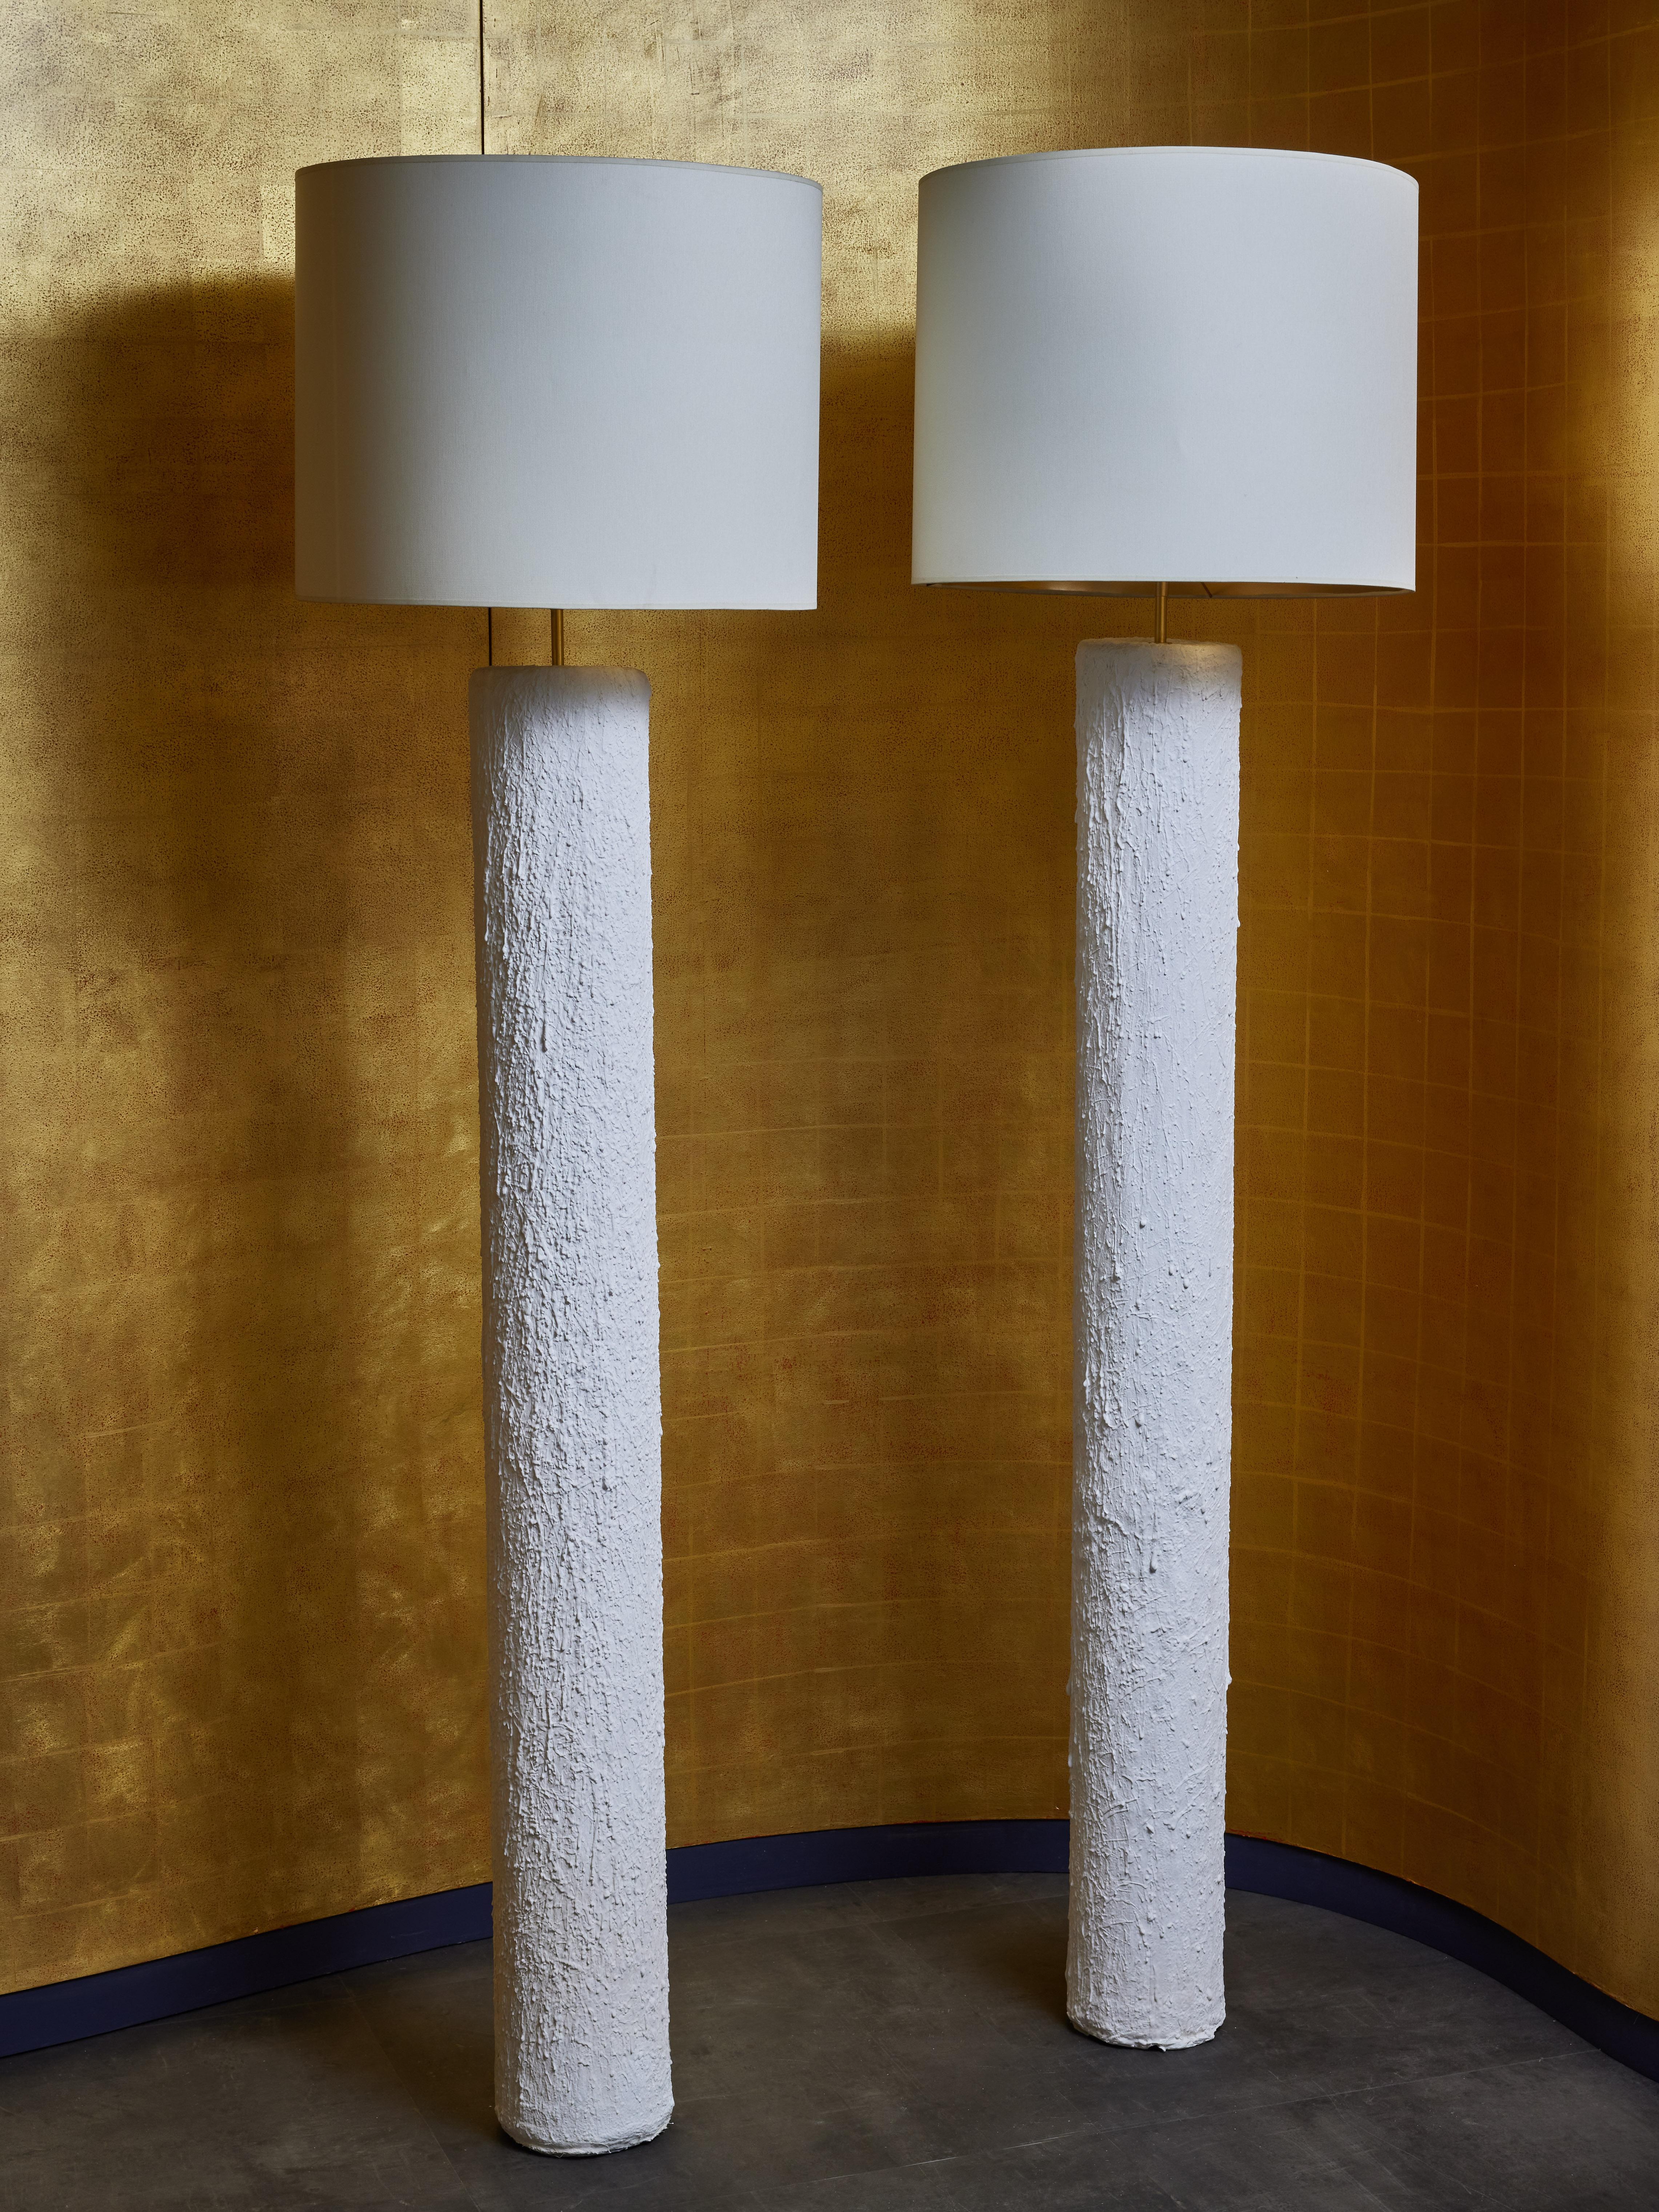 Paire de lampadaires cylindriques, en acier recouvert de plâtre texturé.